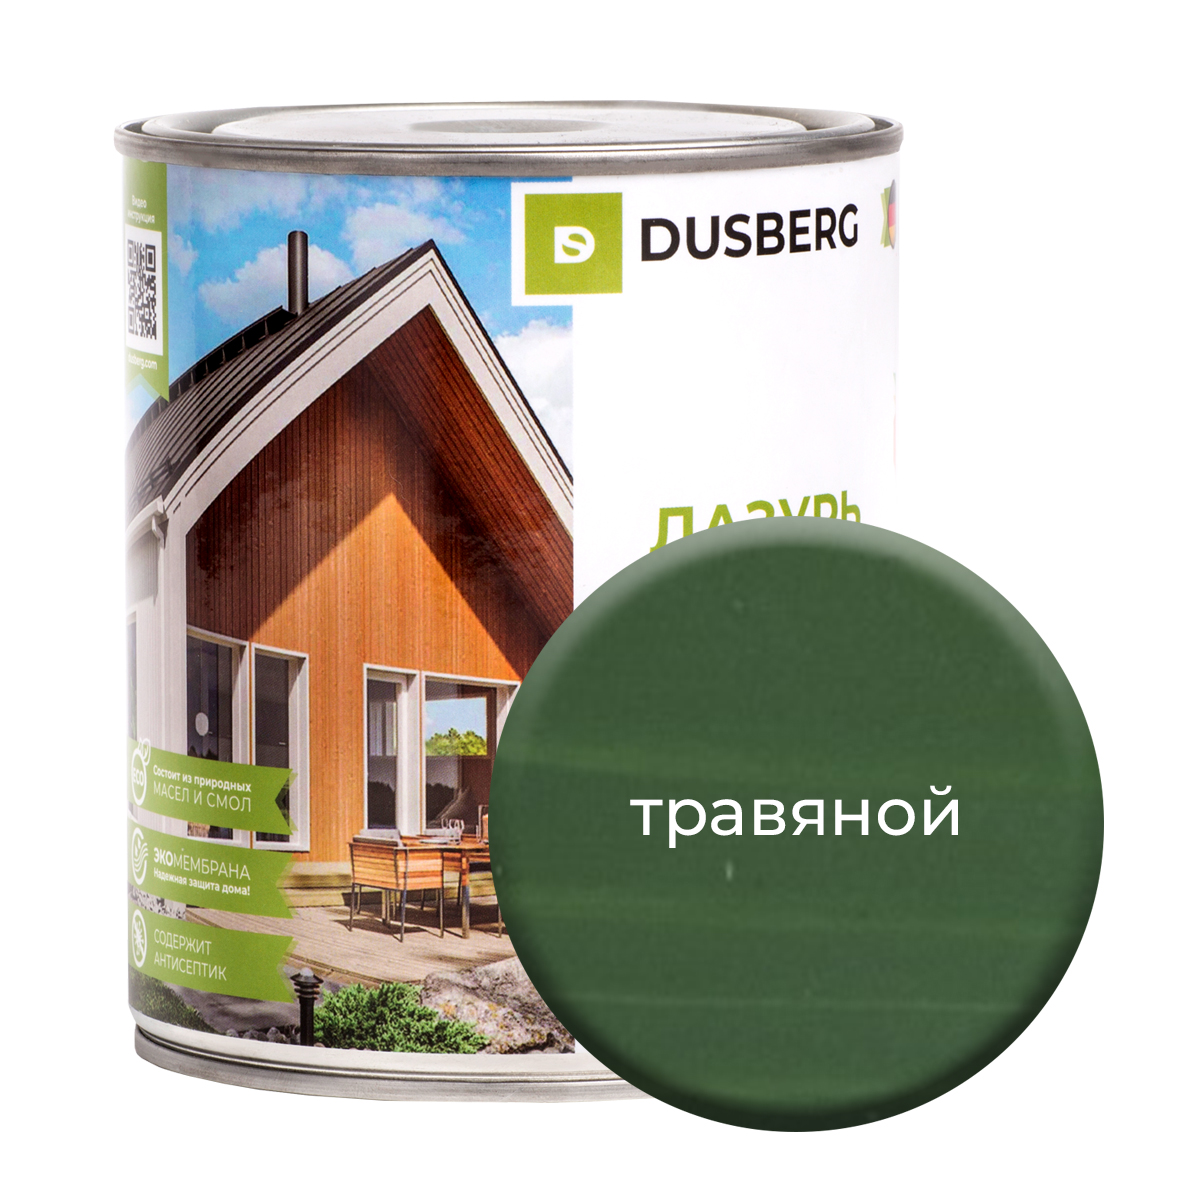 Лазурь Dusberg для дерева 750 мл Травяной чай травяной biopractika белое крыло 40 гр